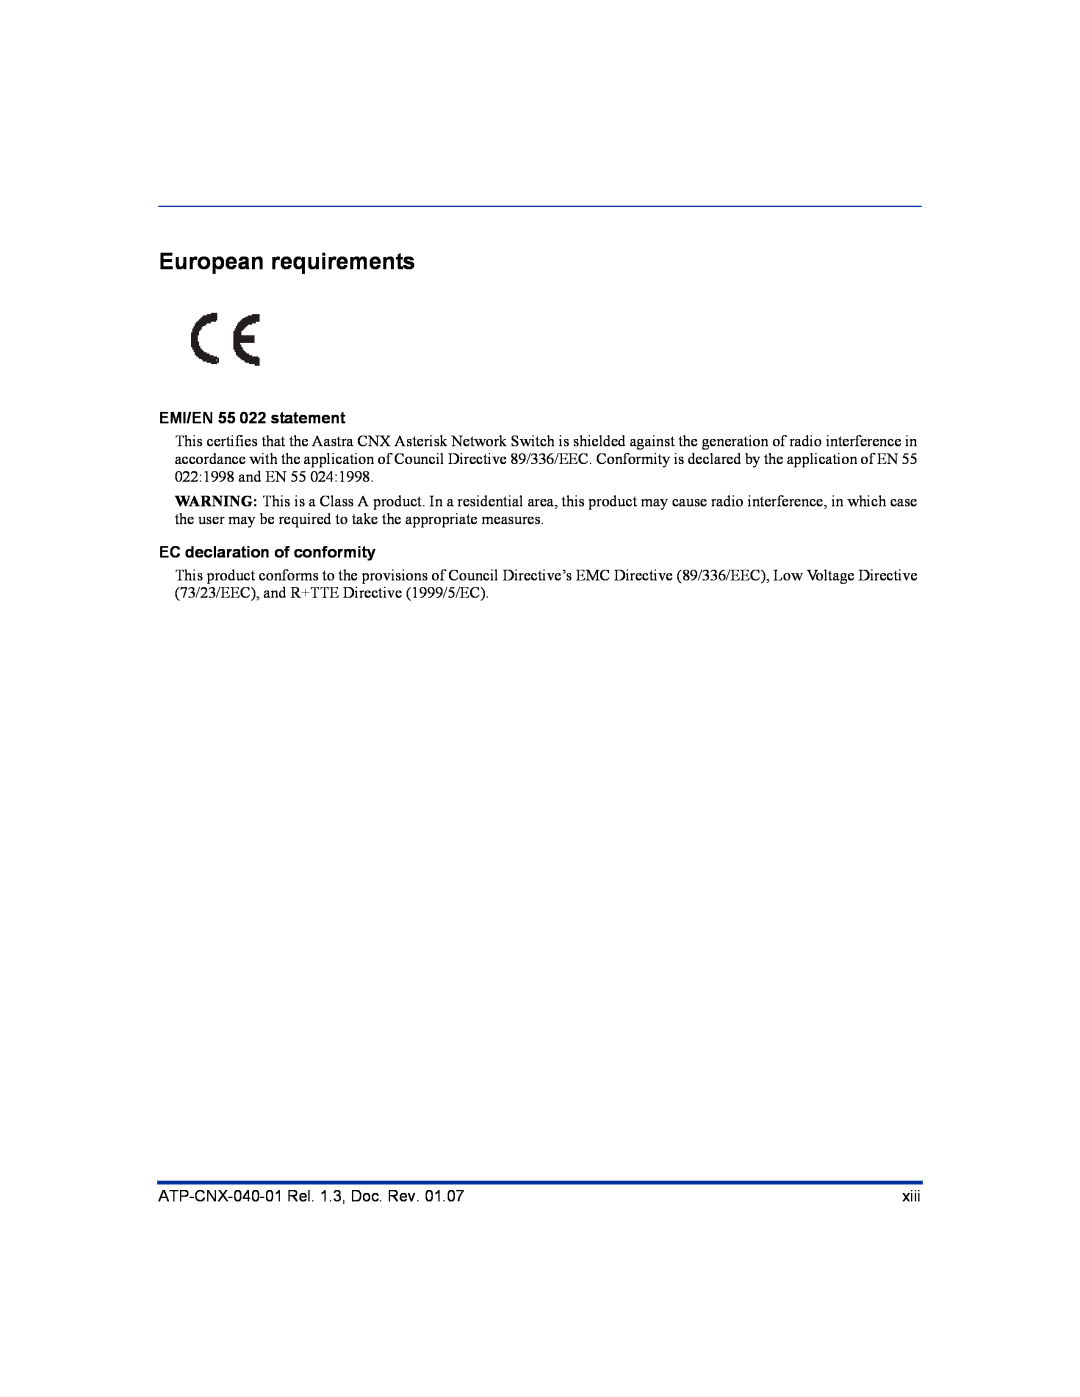 Aastra Telecom ATP-CNX-040-01 manual European requirements, EMI/EN 55 022 statement, EC declaration of conformity 